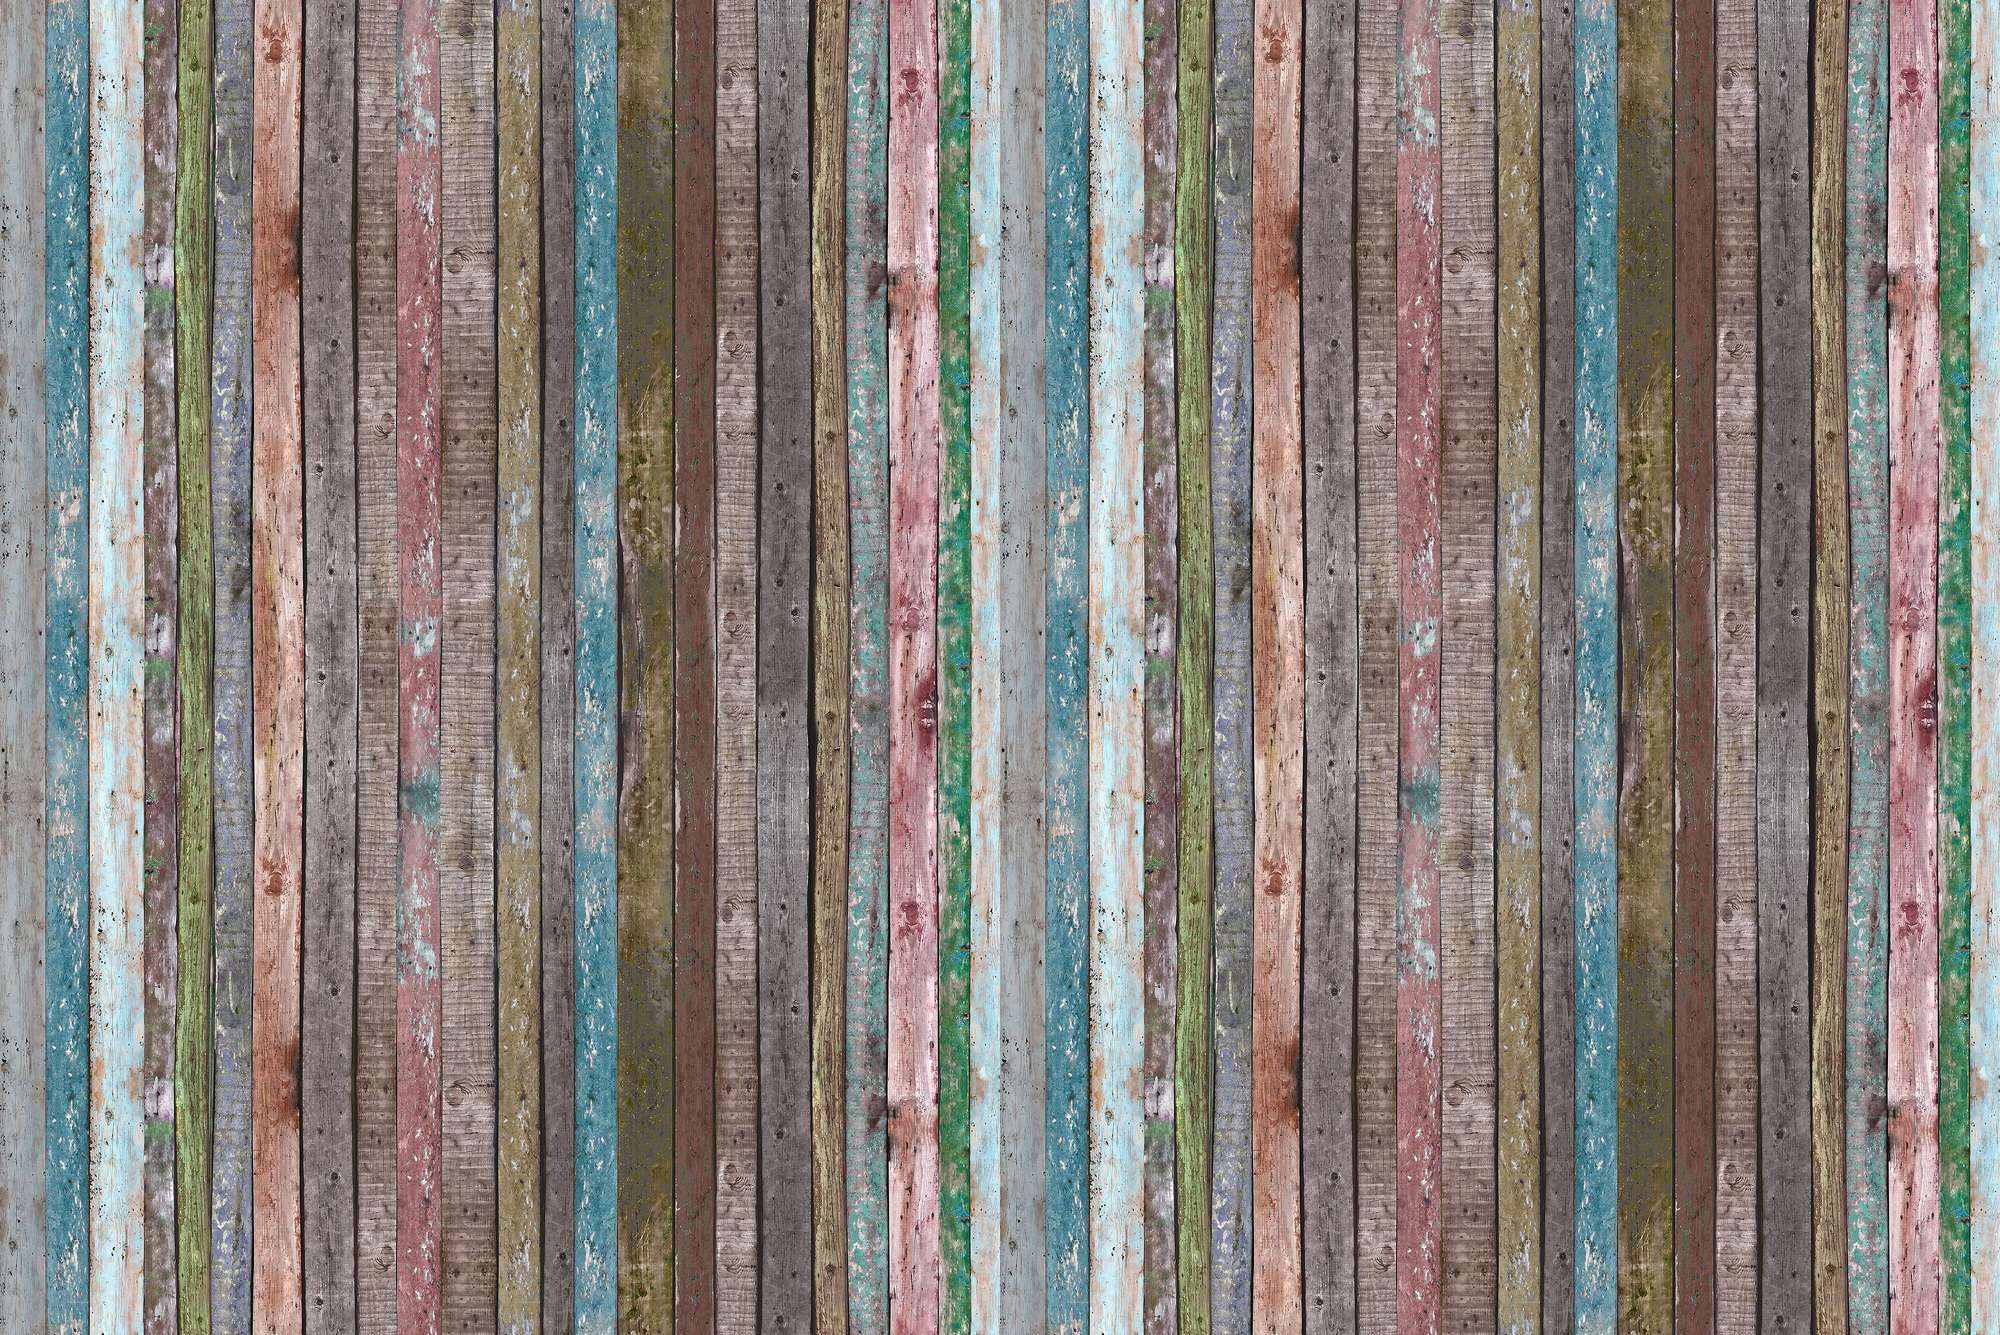             Valla de papel pintado de madera de tablas marrón turquesa sobre vellón liso de primera calidad
        